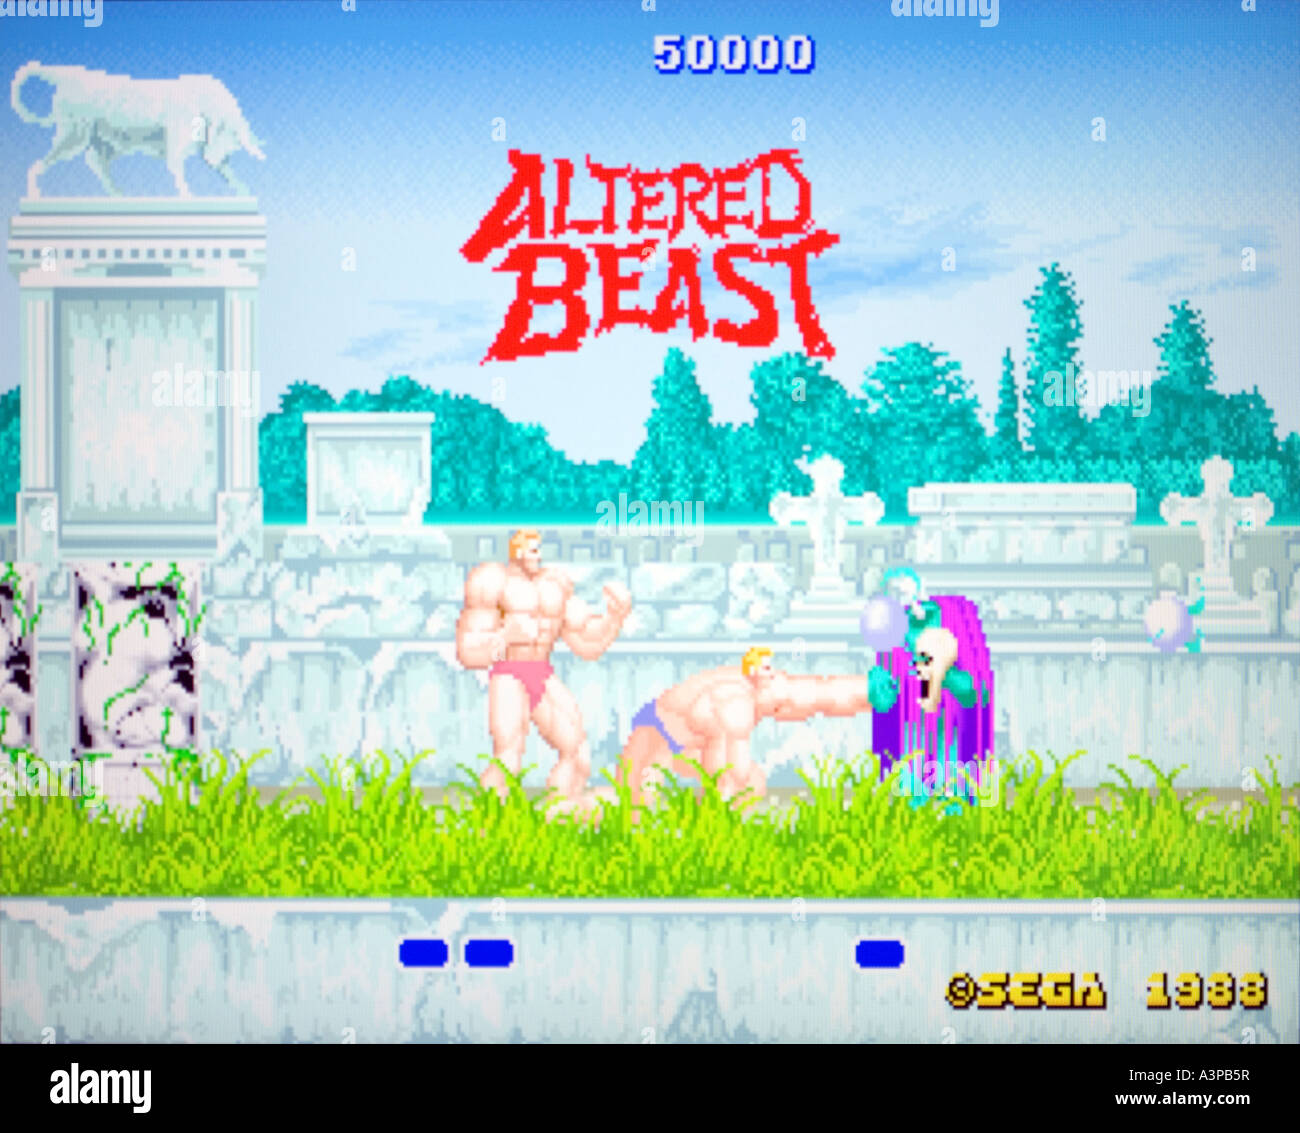 Sega Altered Beast arcade vintage 1988 capture d'utiliser uniquement la rédaction de jeux vidéo Banque D'Images